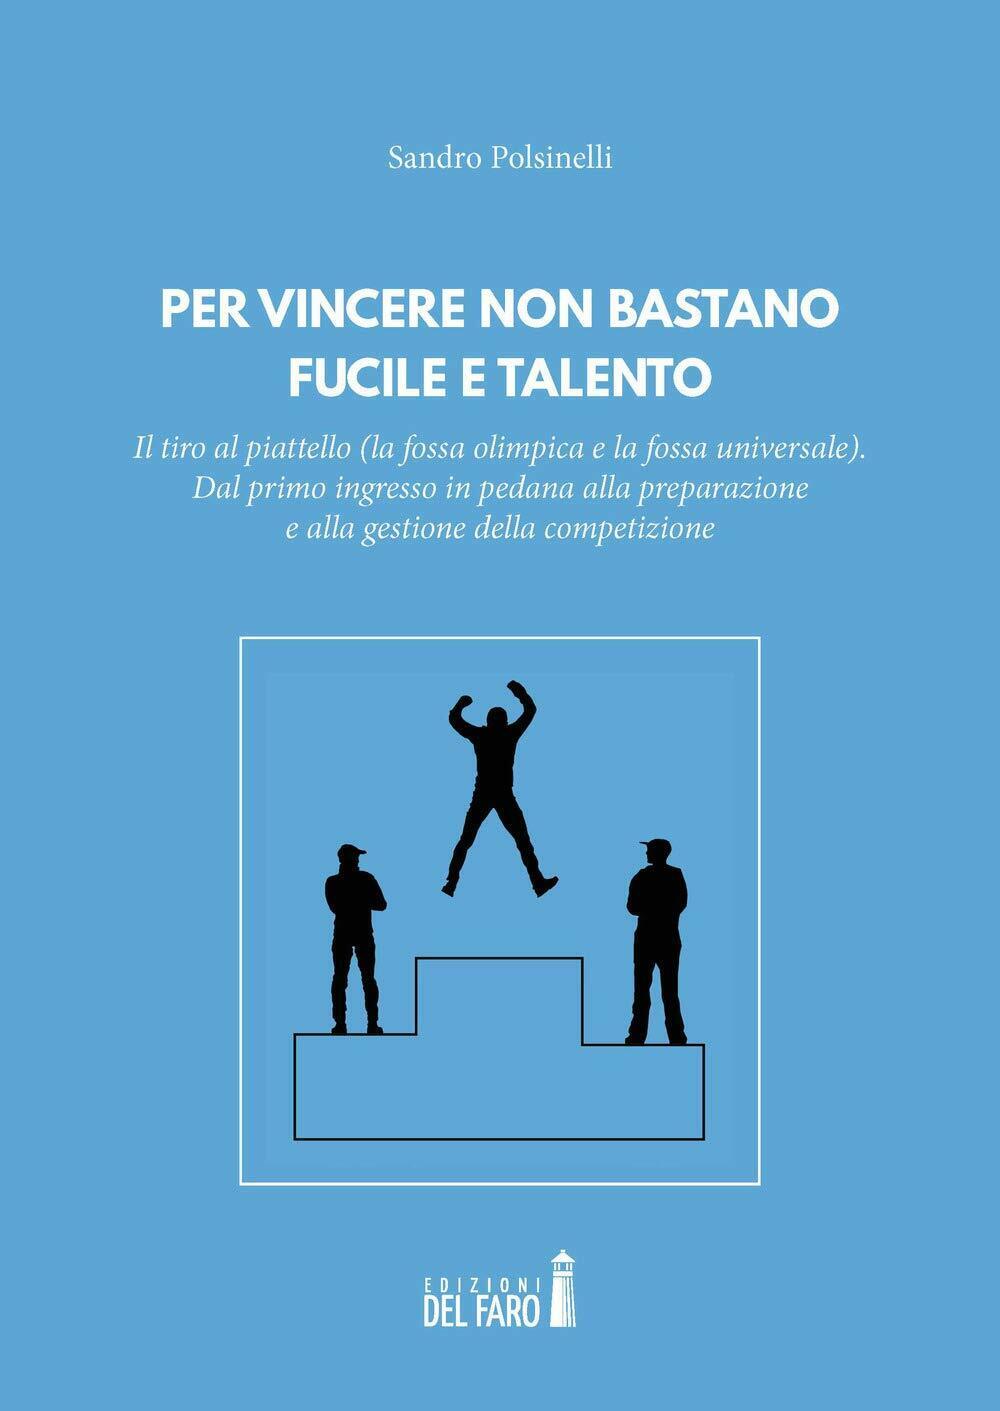 Per vincere non bastano fucile e talento - Sandro Polsinelli - del Faro, 2018 libro usato